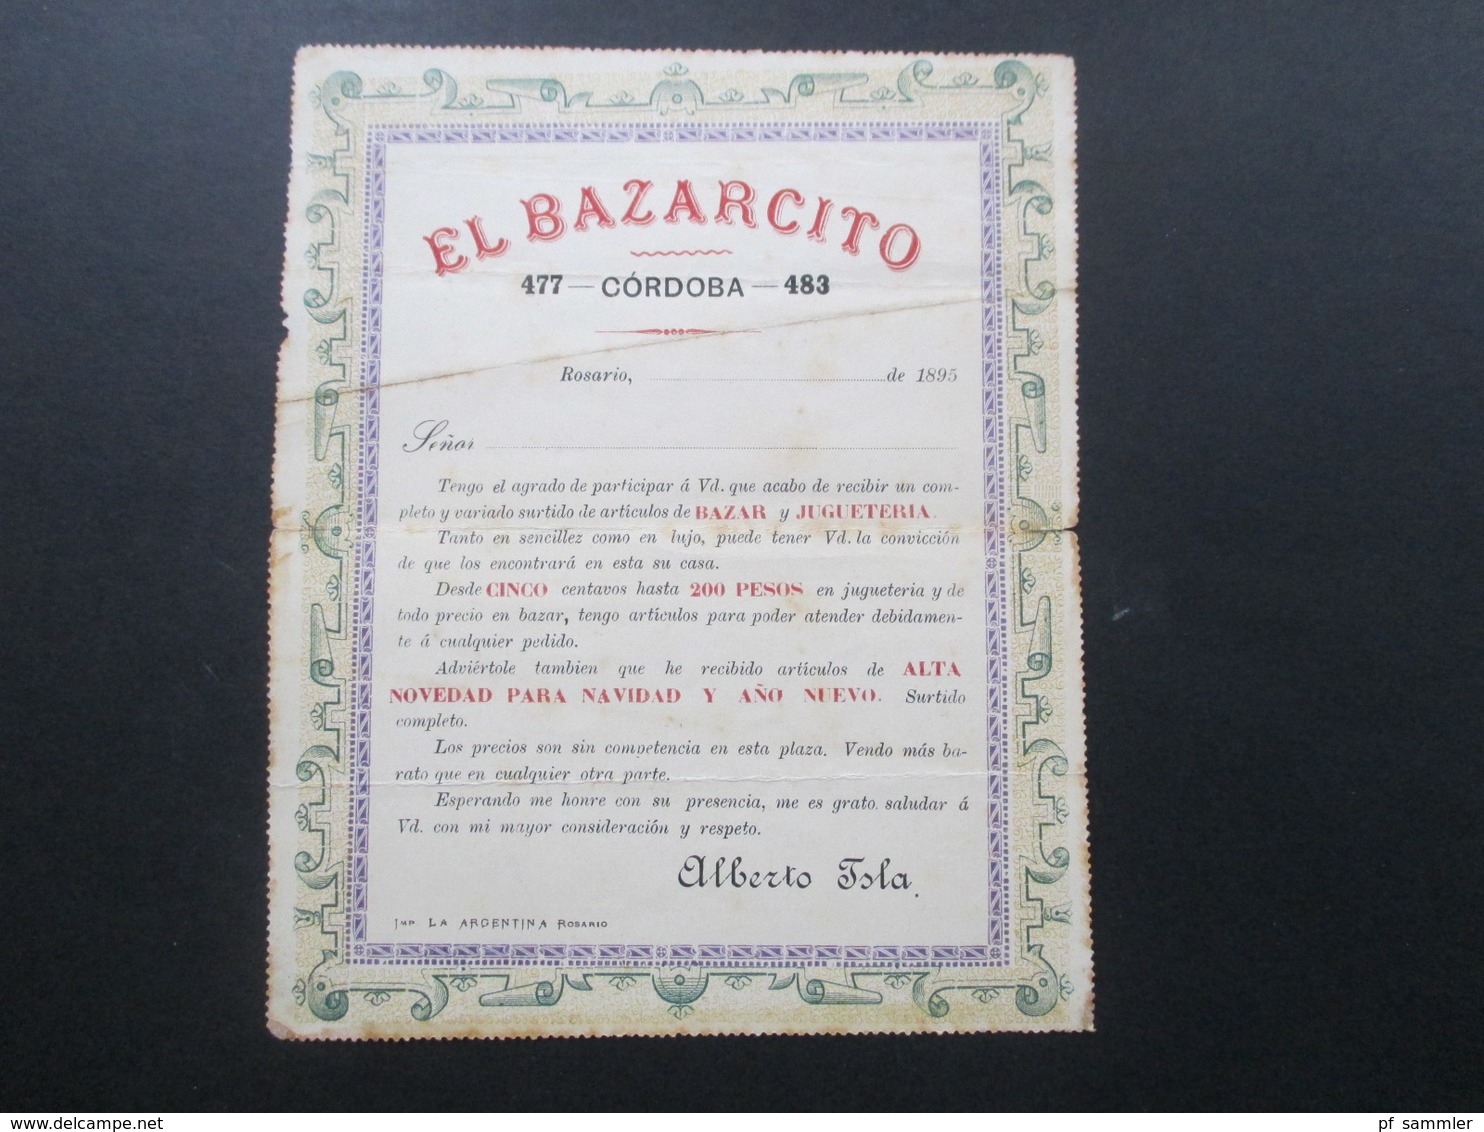 Argentinien 1895 Kartenbrief Innen Mit Werbedruck El Bazarcito Cordoba / Weihnachten Alberto Isla - Briefe U. Dokumente